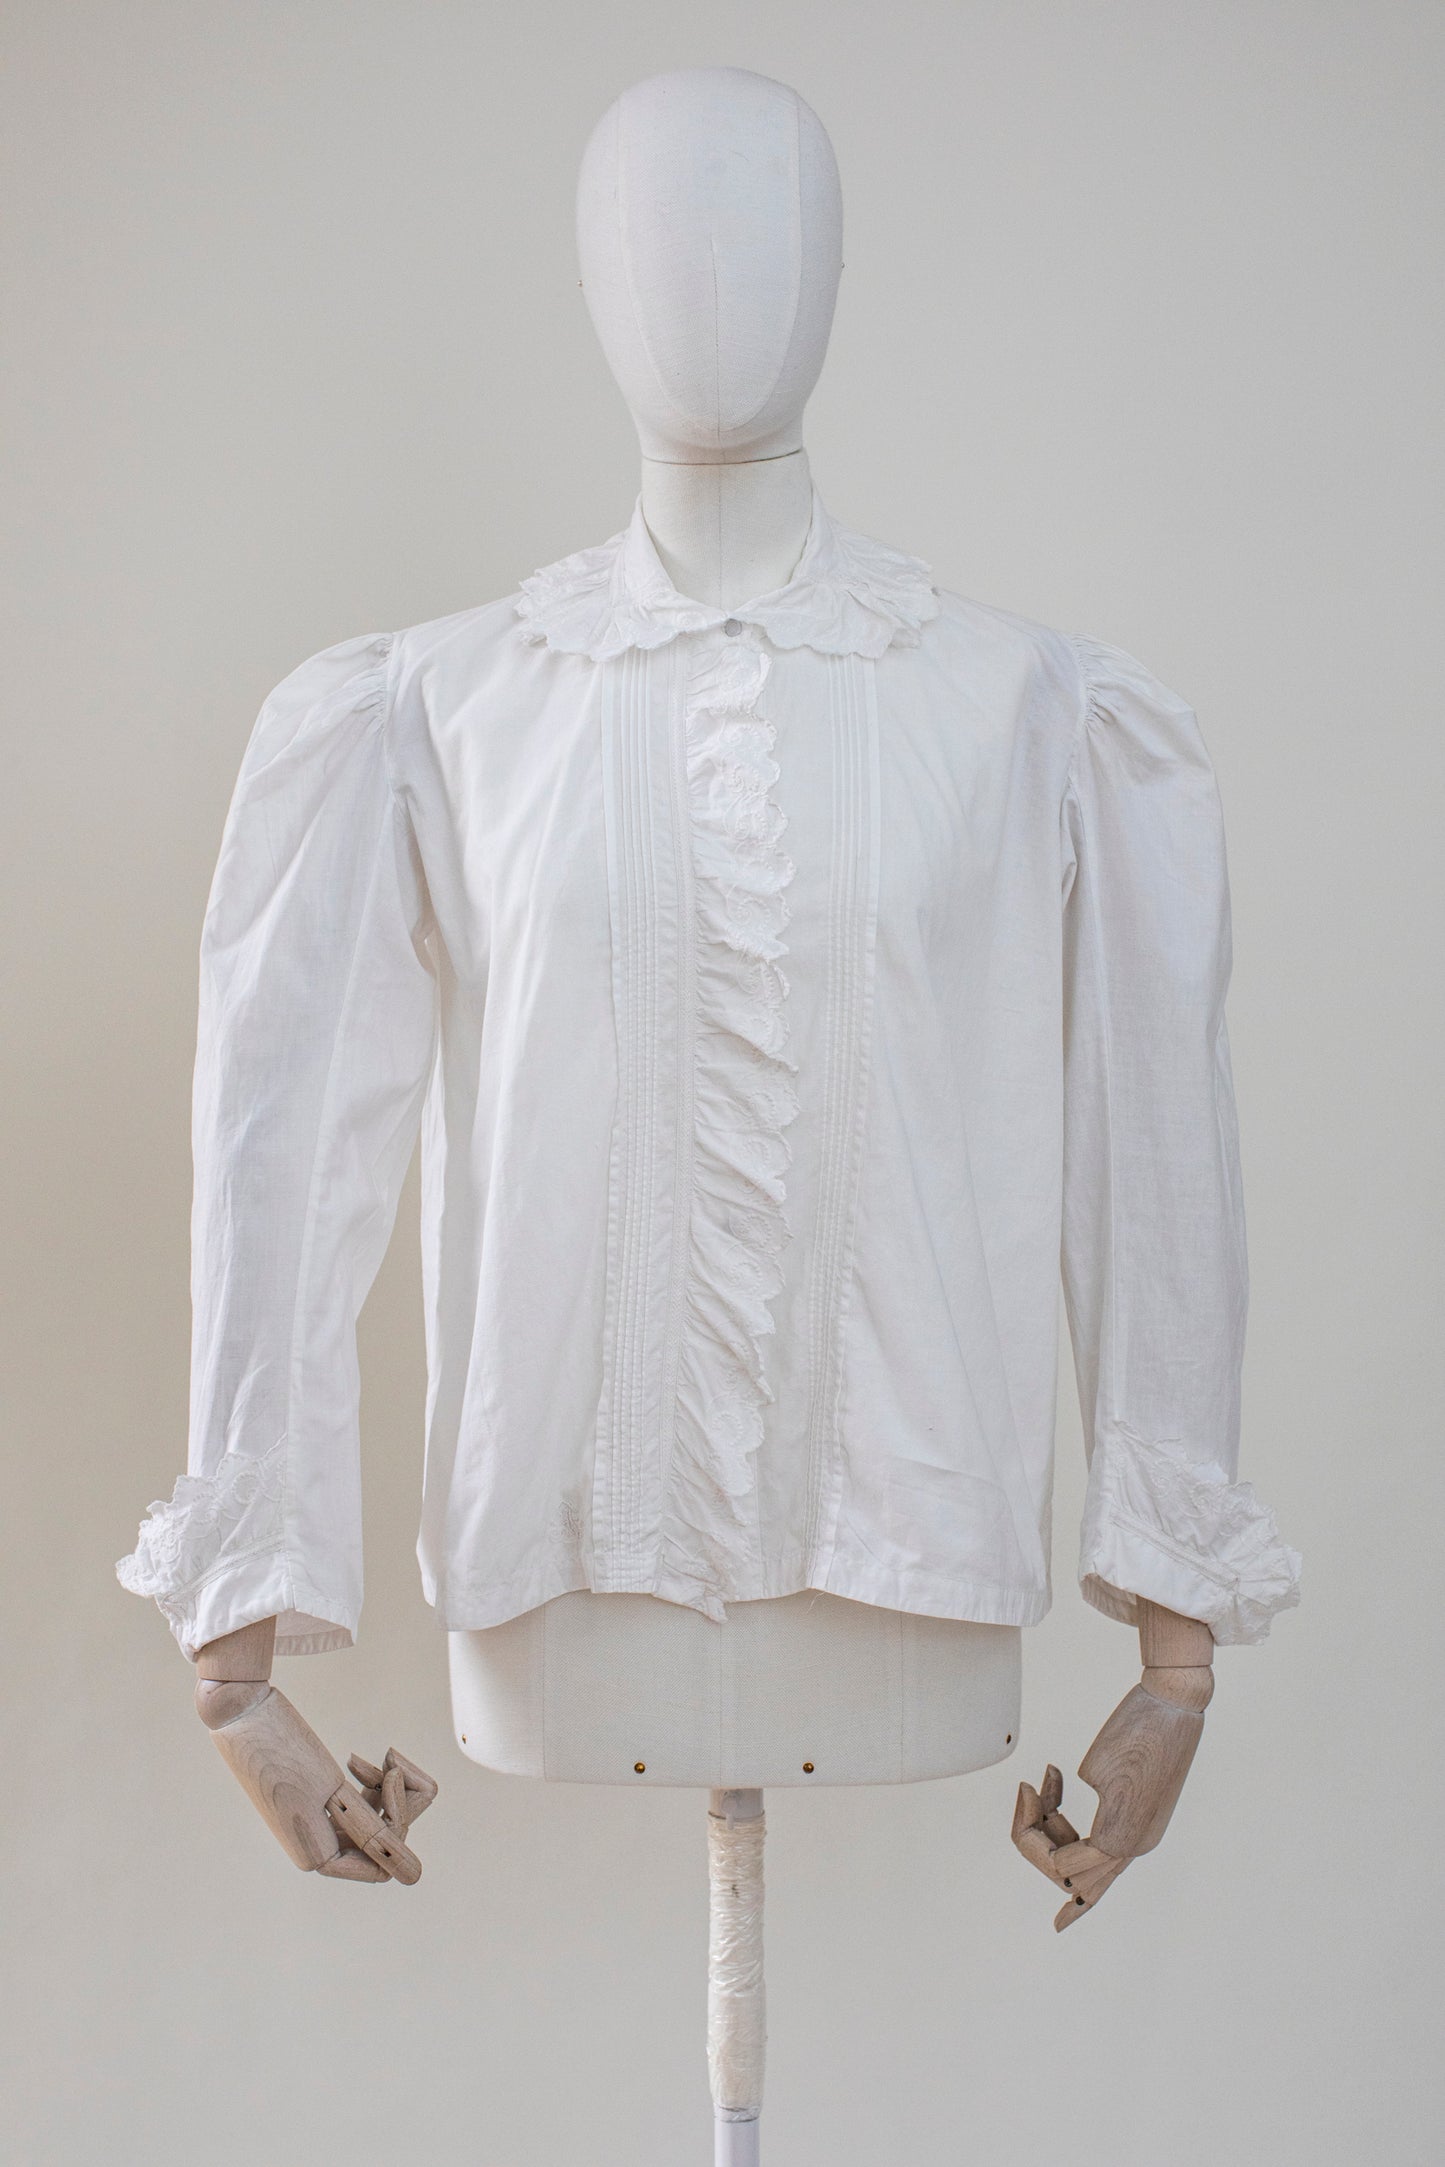 Antique 1920 White Cotton Lace Blouse Size S-M